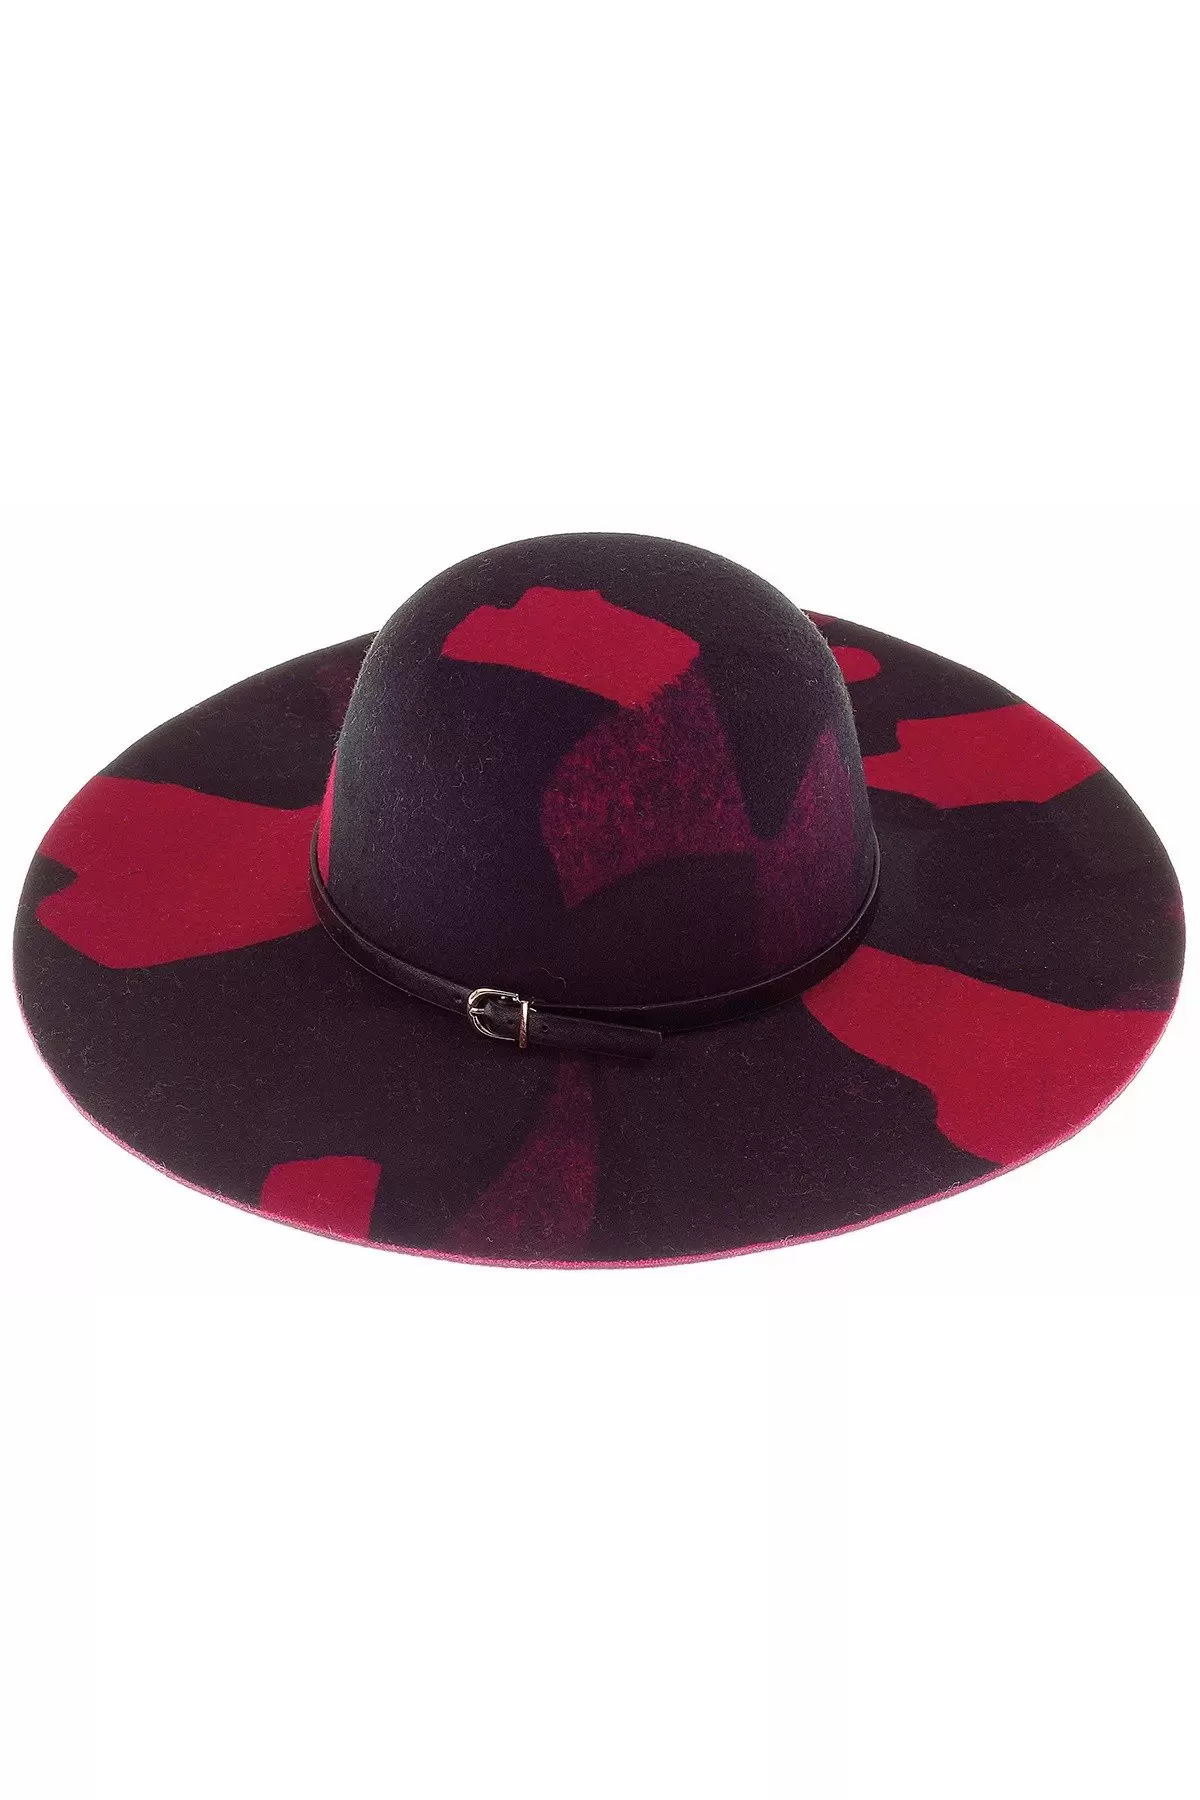 Desenli Geniş Kenarlı Kadın Şapka Kırmızı 7184